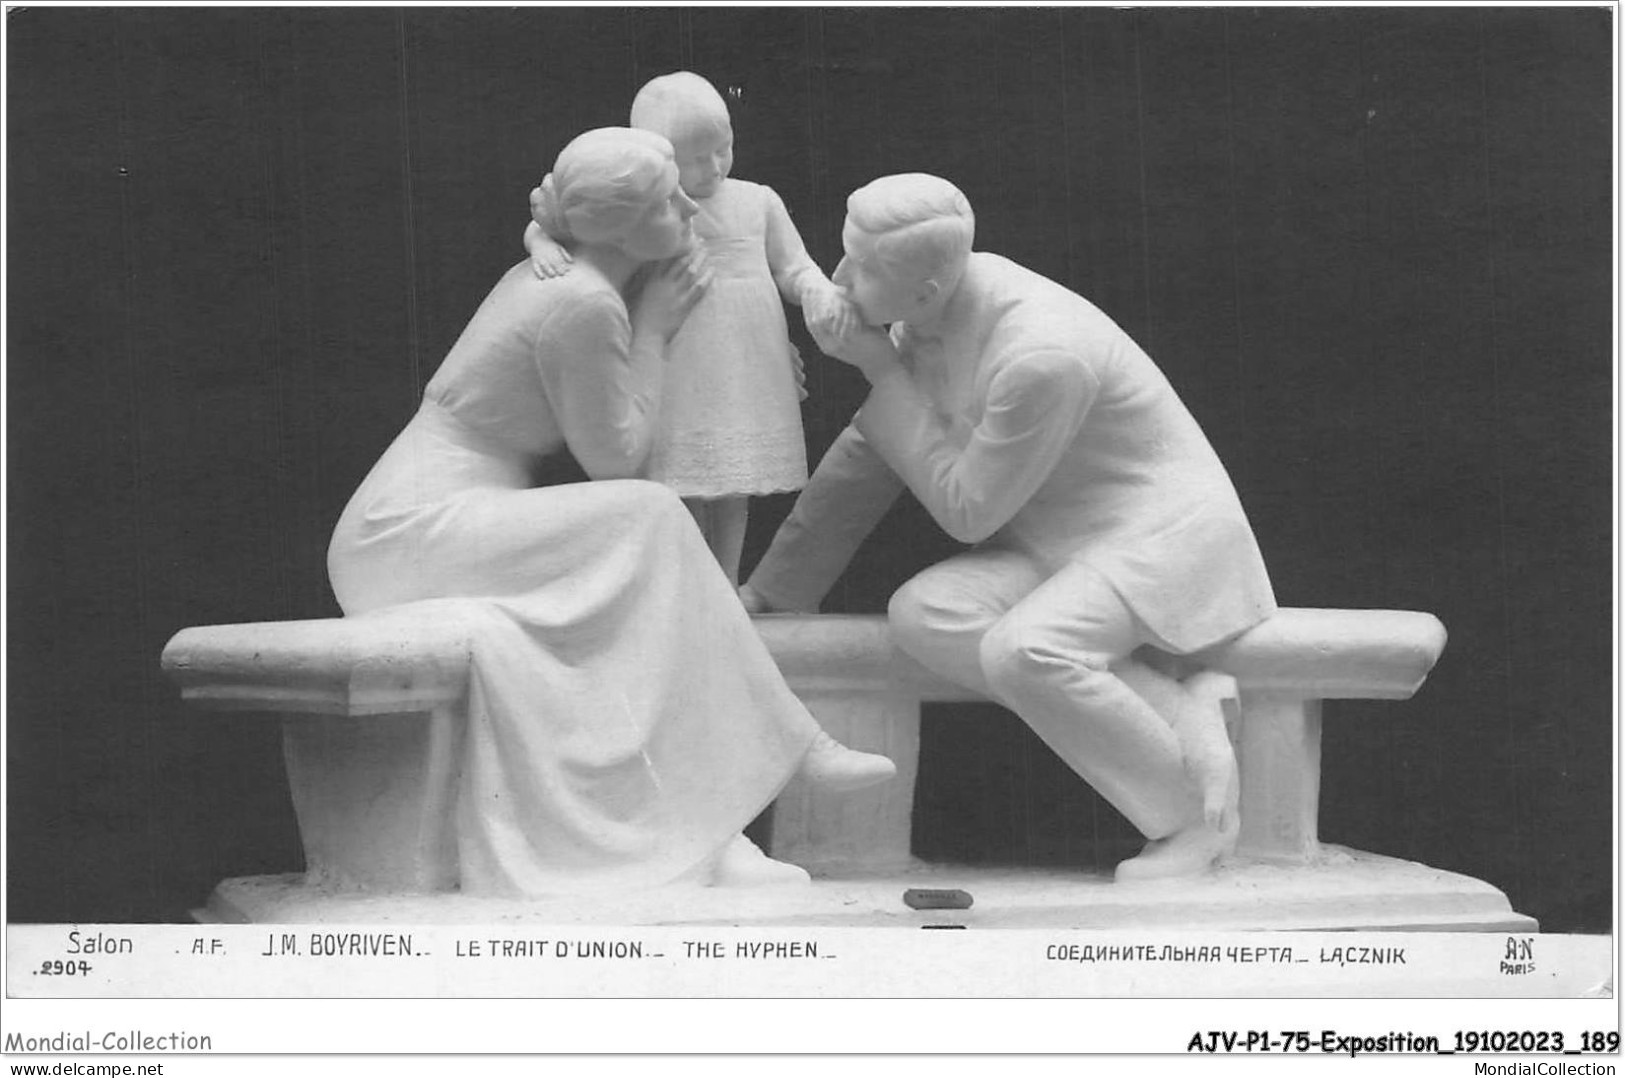 AJVP1-0095 - EXPOSITION - J-M BOYRIVEN - LE TRAIT D'UNION - SALON  - Skulpturen